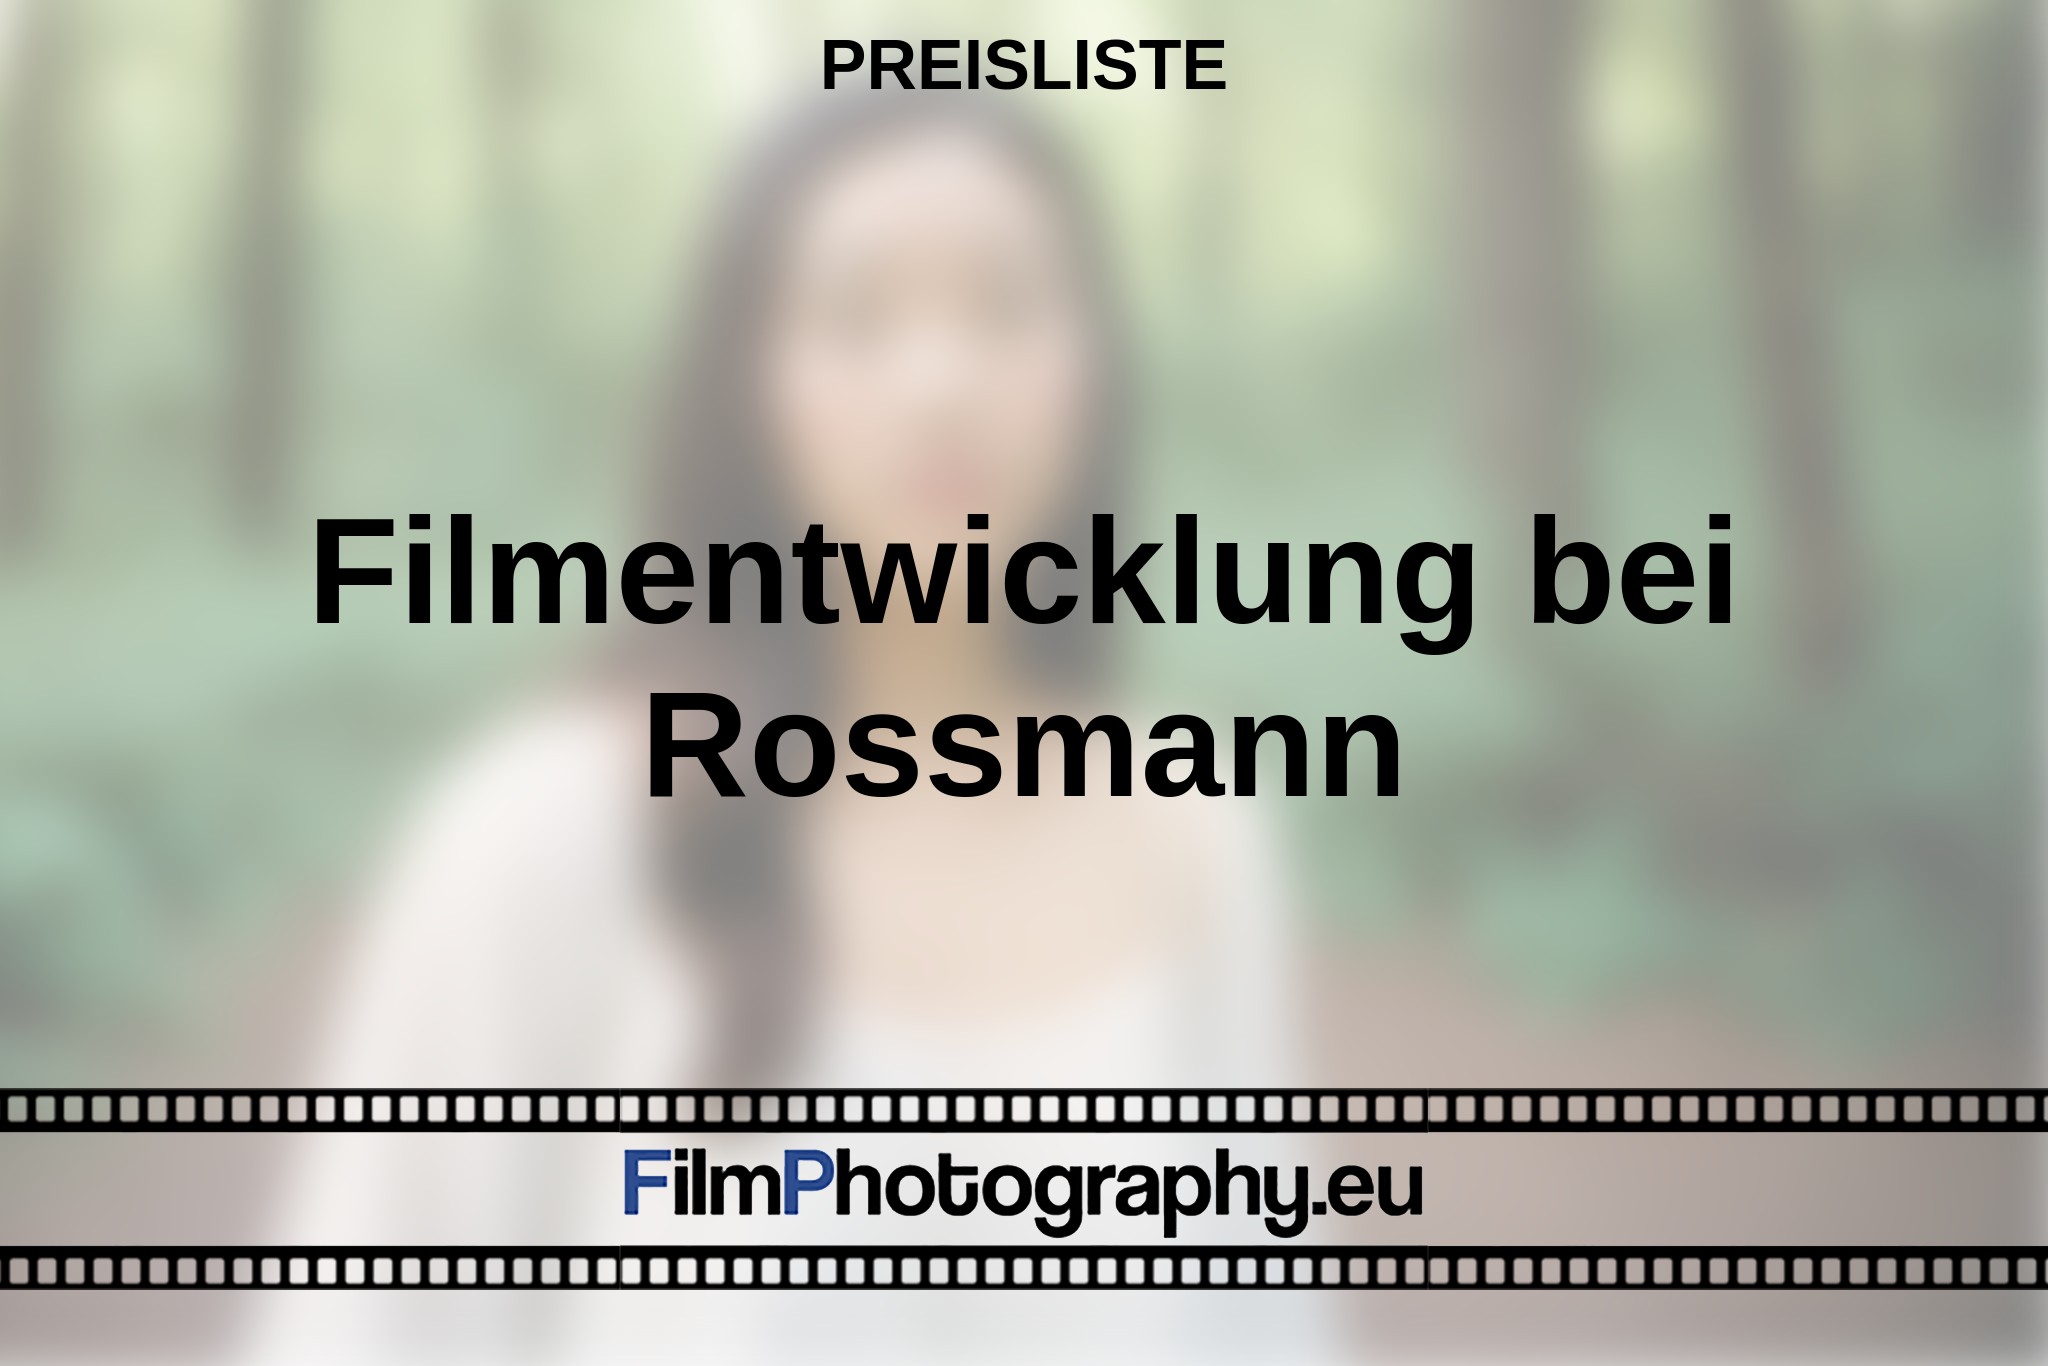 filmentwicklung-bei-rossmann-preisliste-bnv.jpg